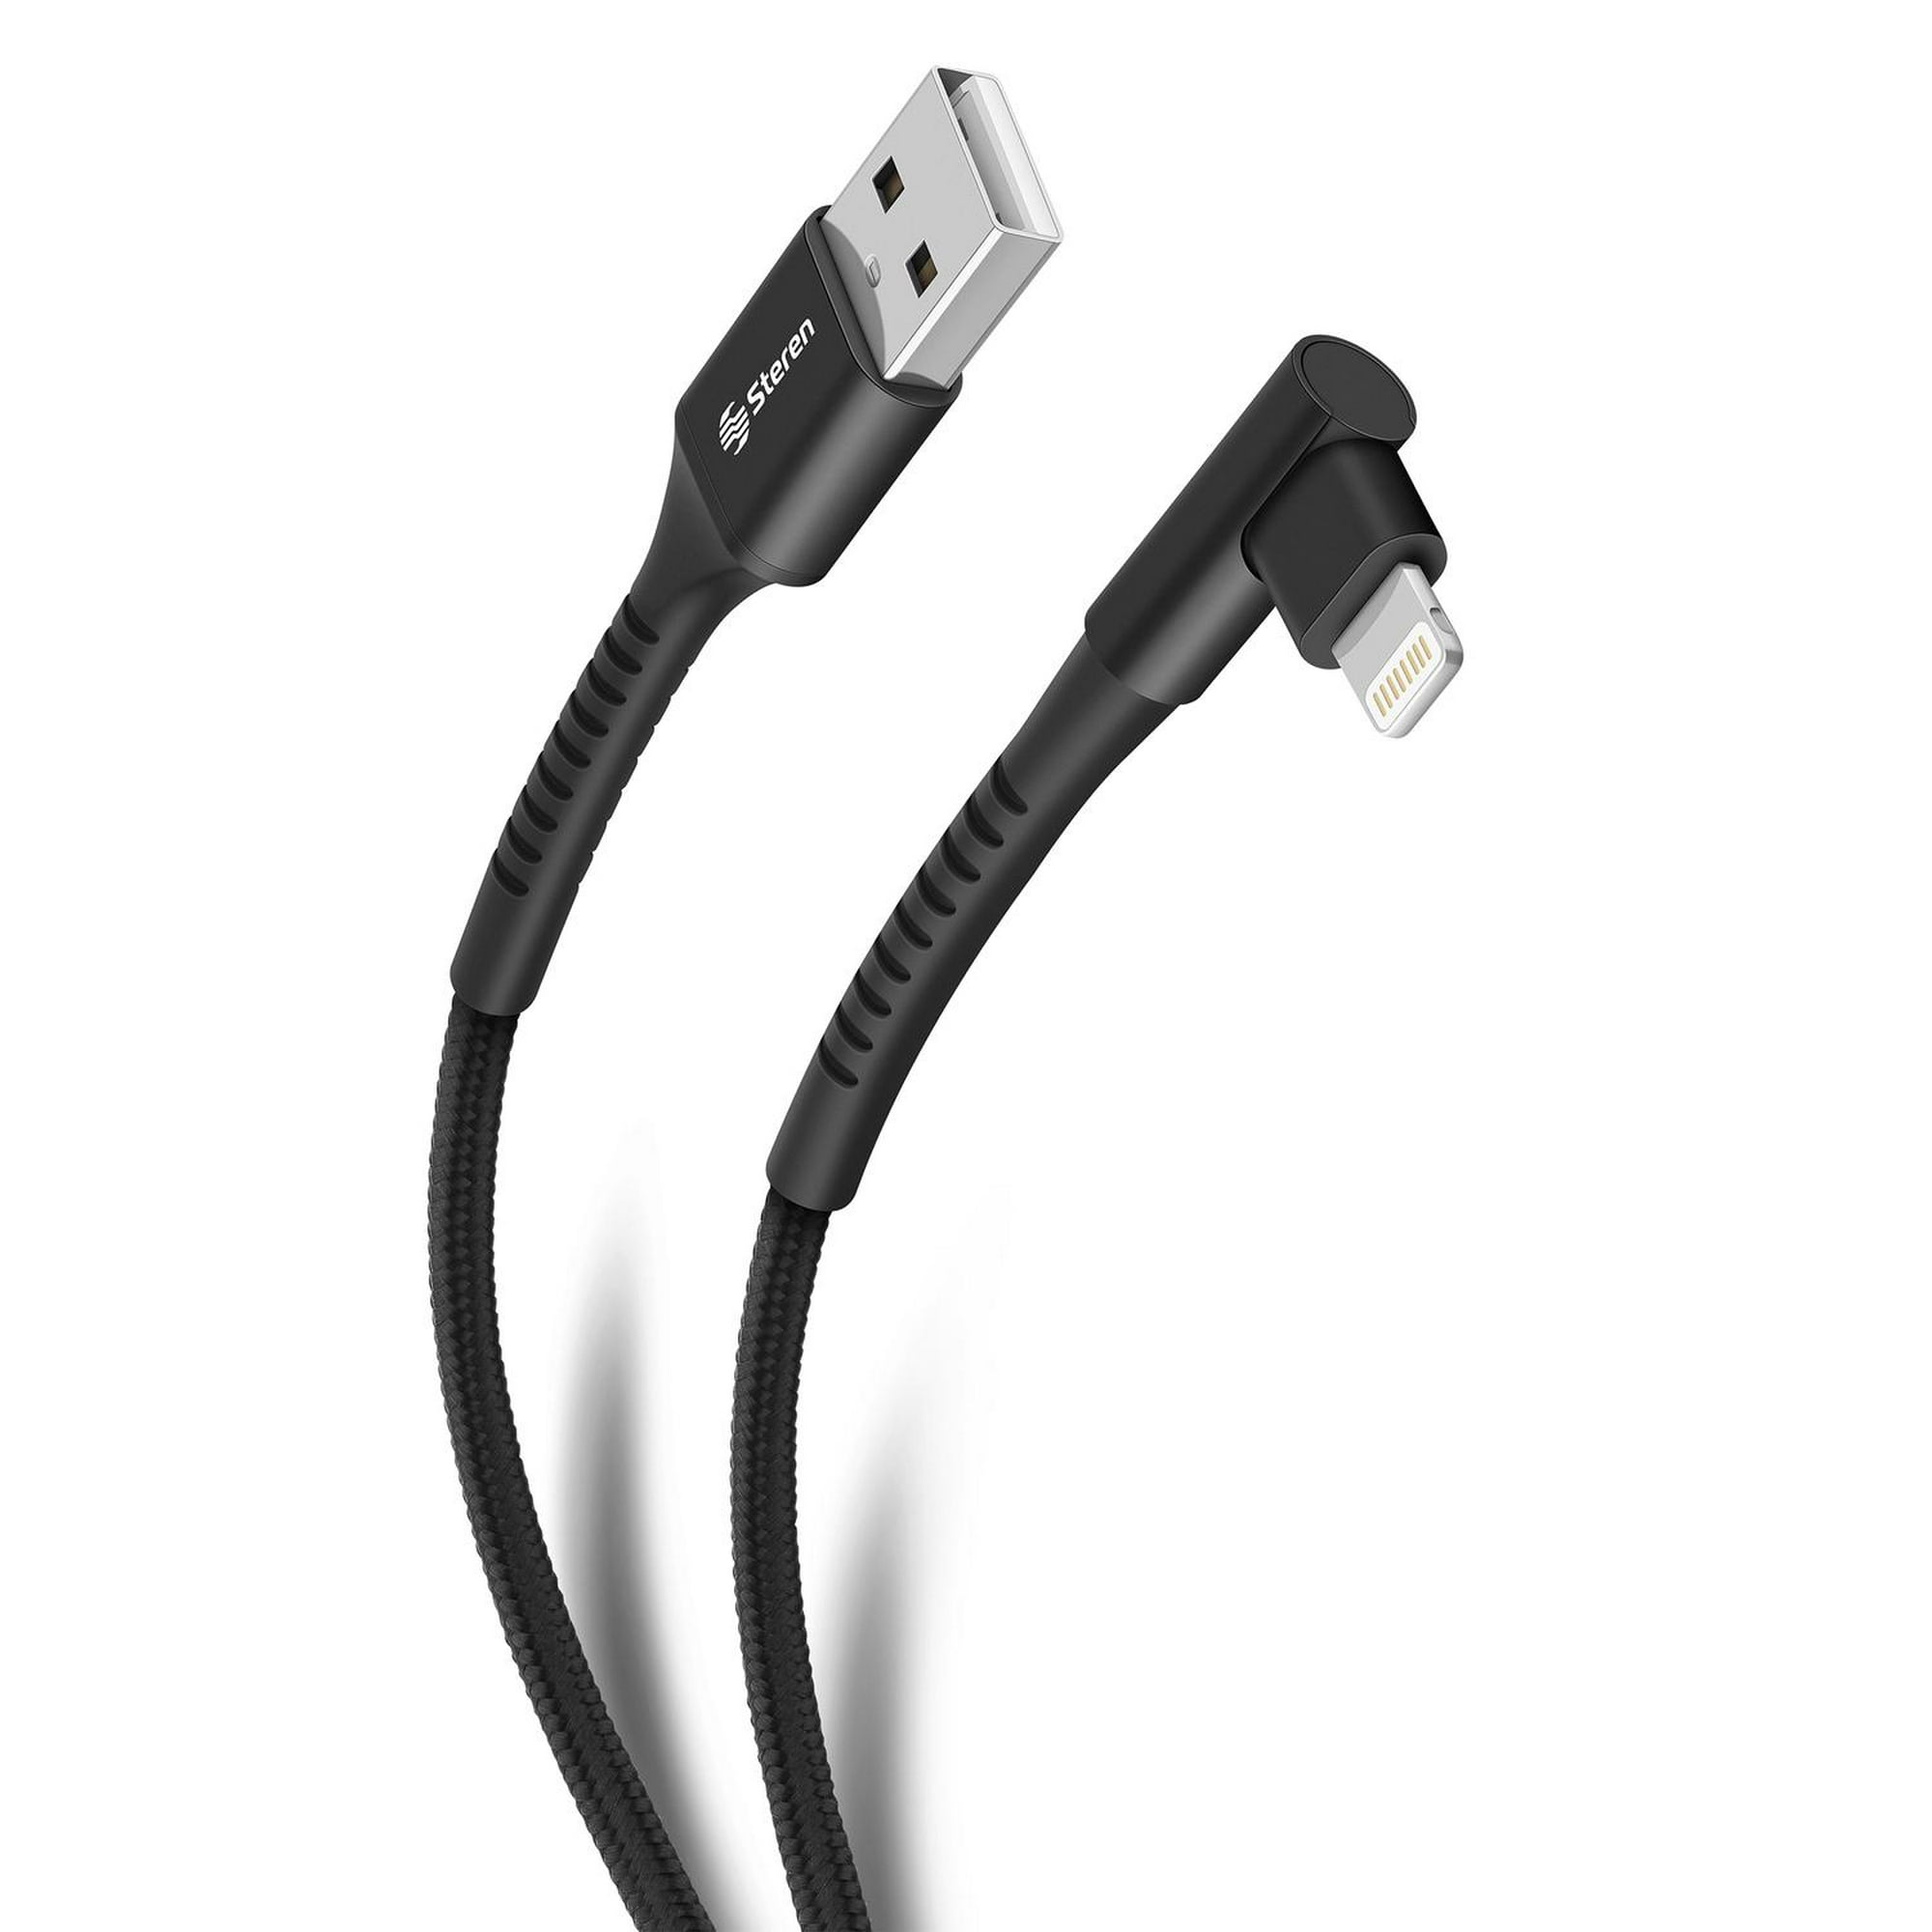 Cable de extensión USB 2.0 con interruptor, 1m, negro